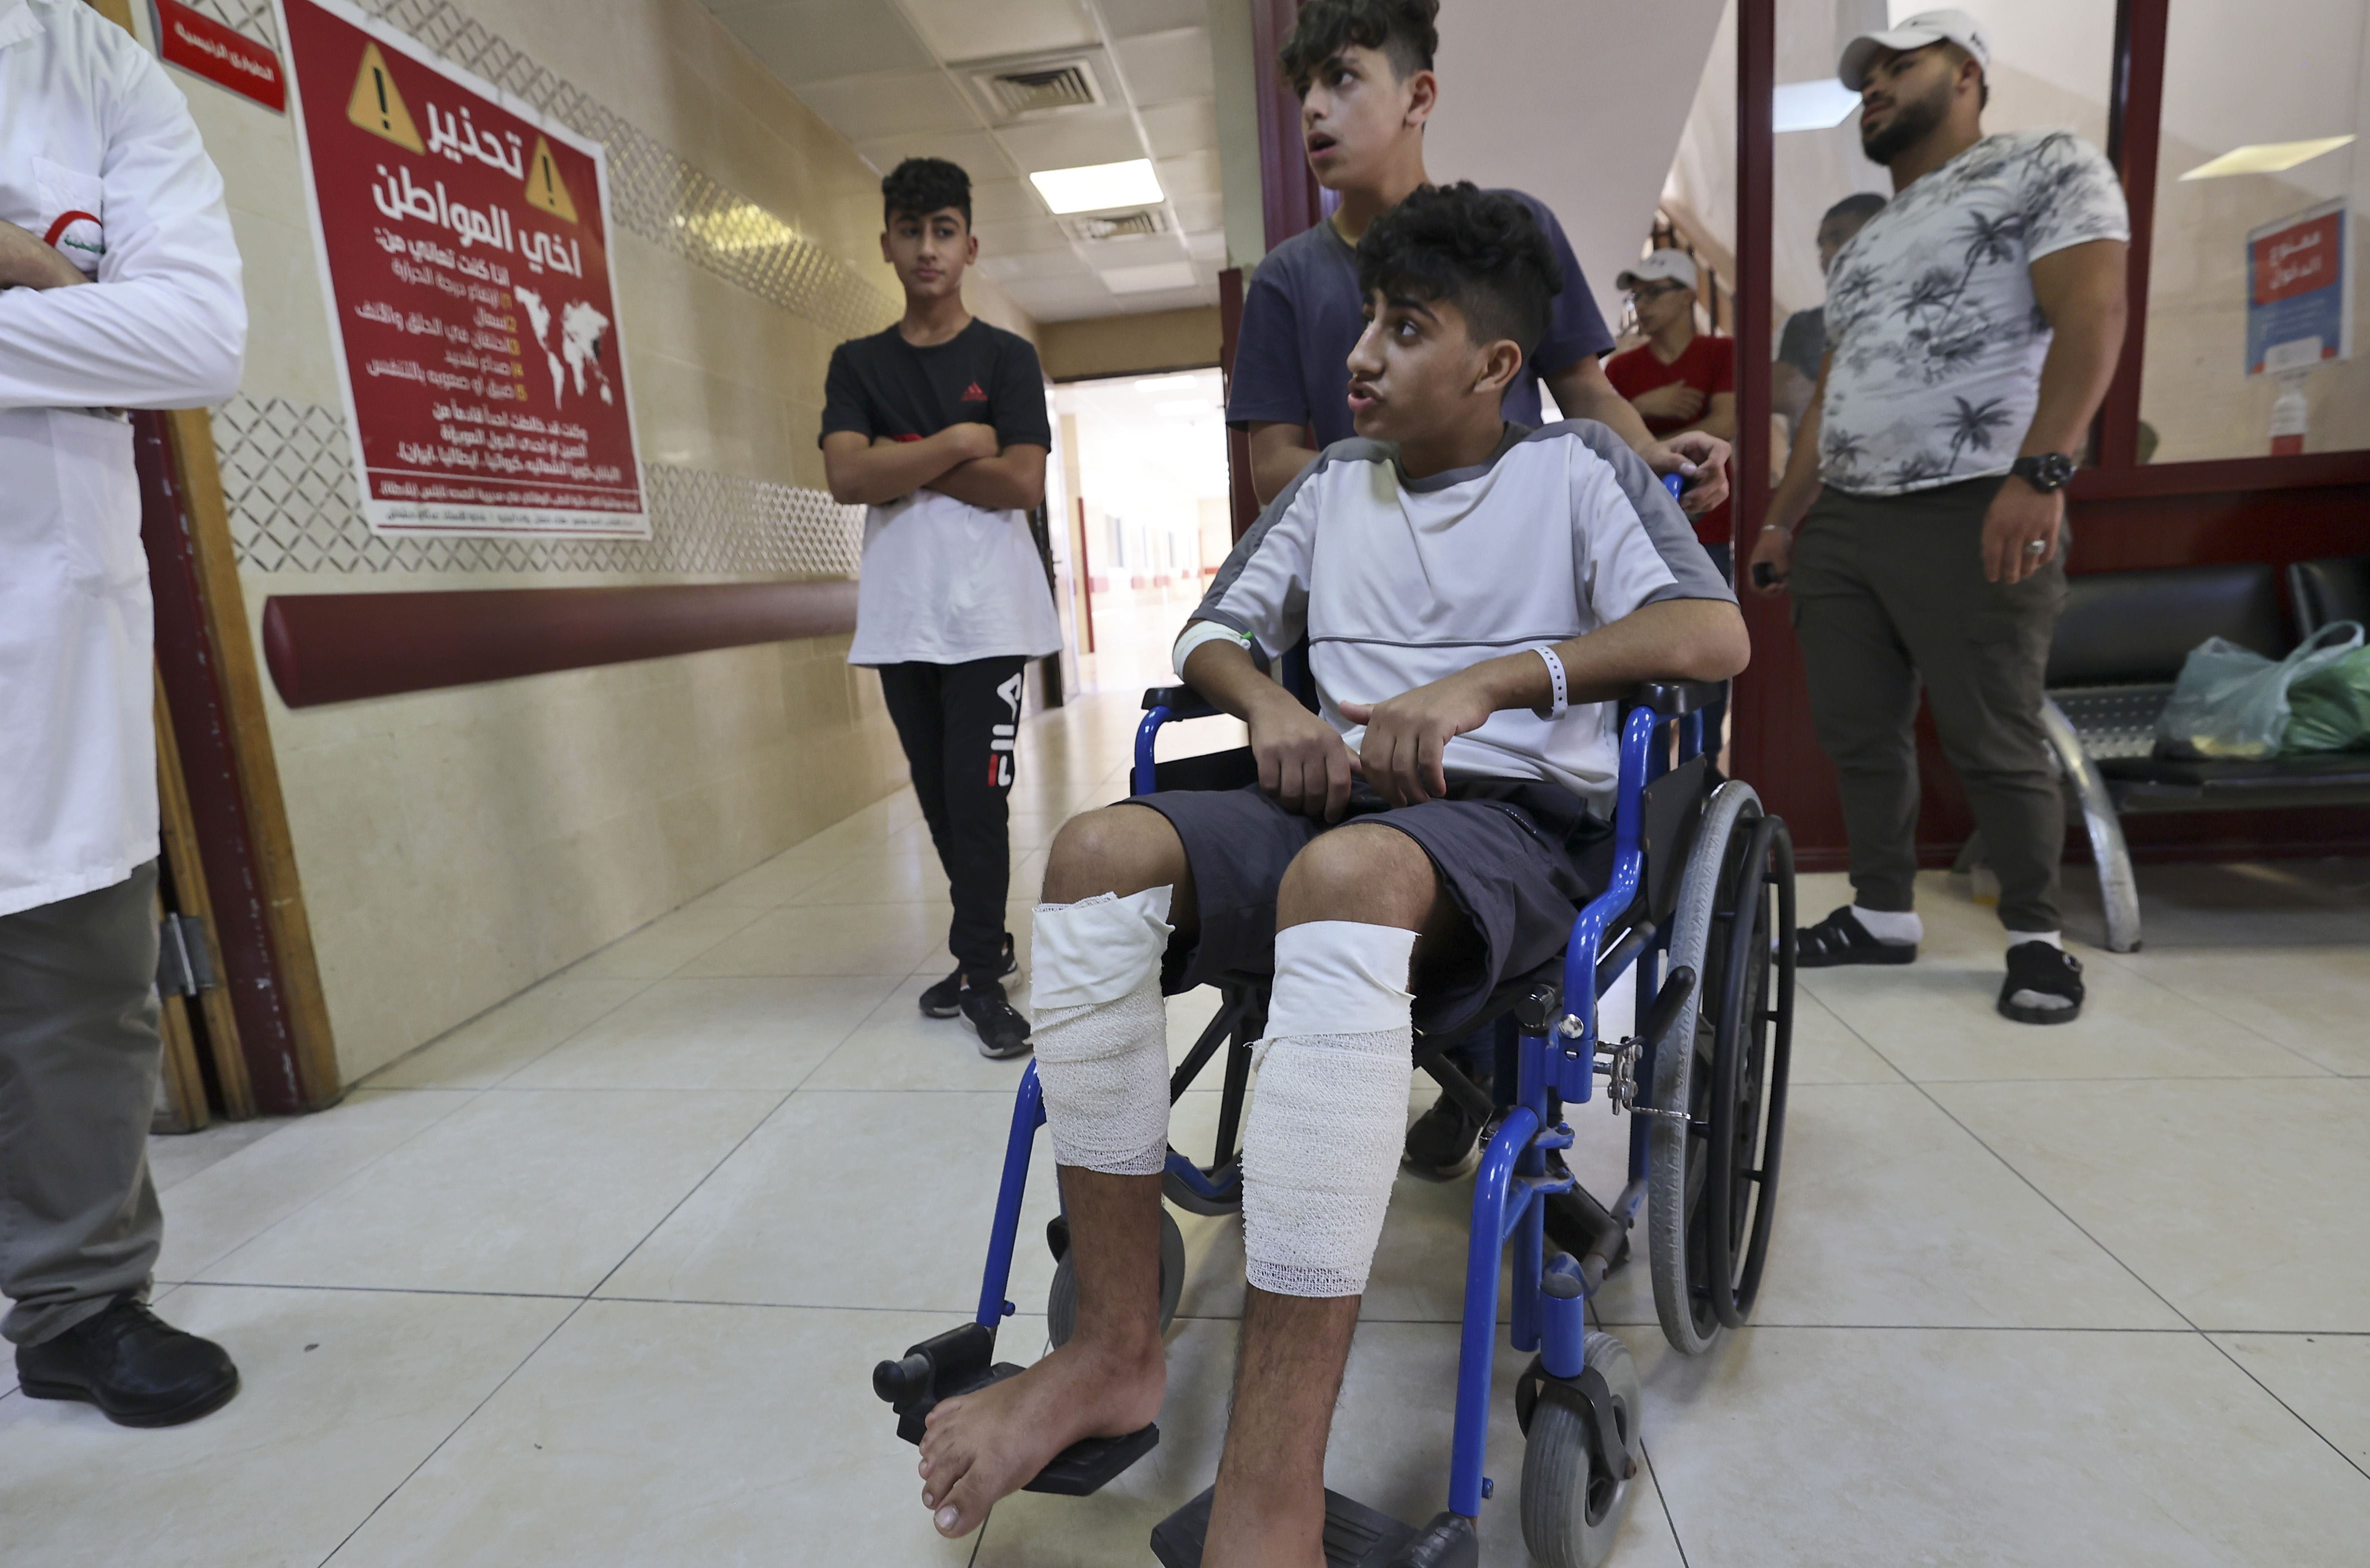 تصاعد العنف في الضفة الغربية يرهق كاهل الأطباء الفلسطينيين